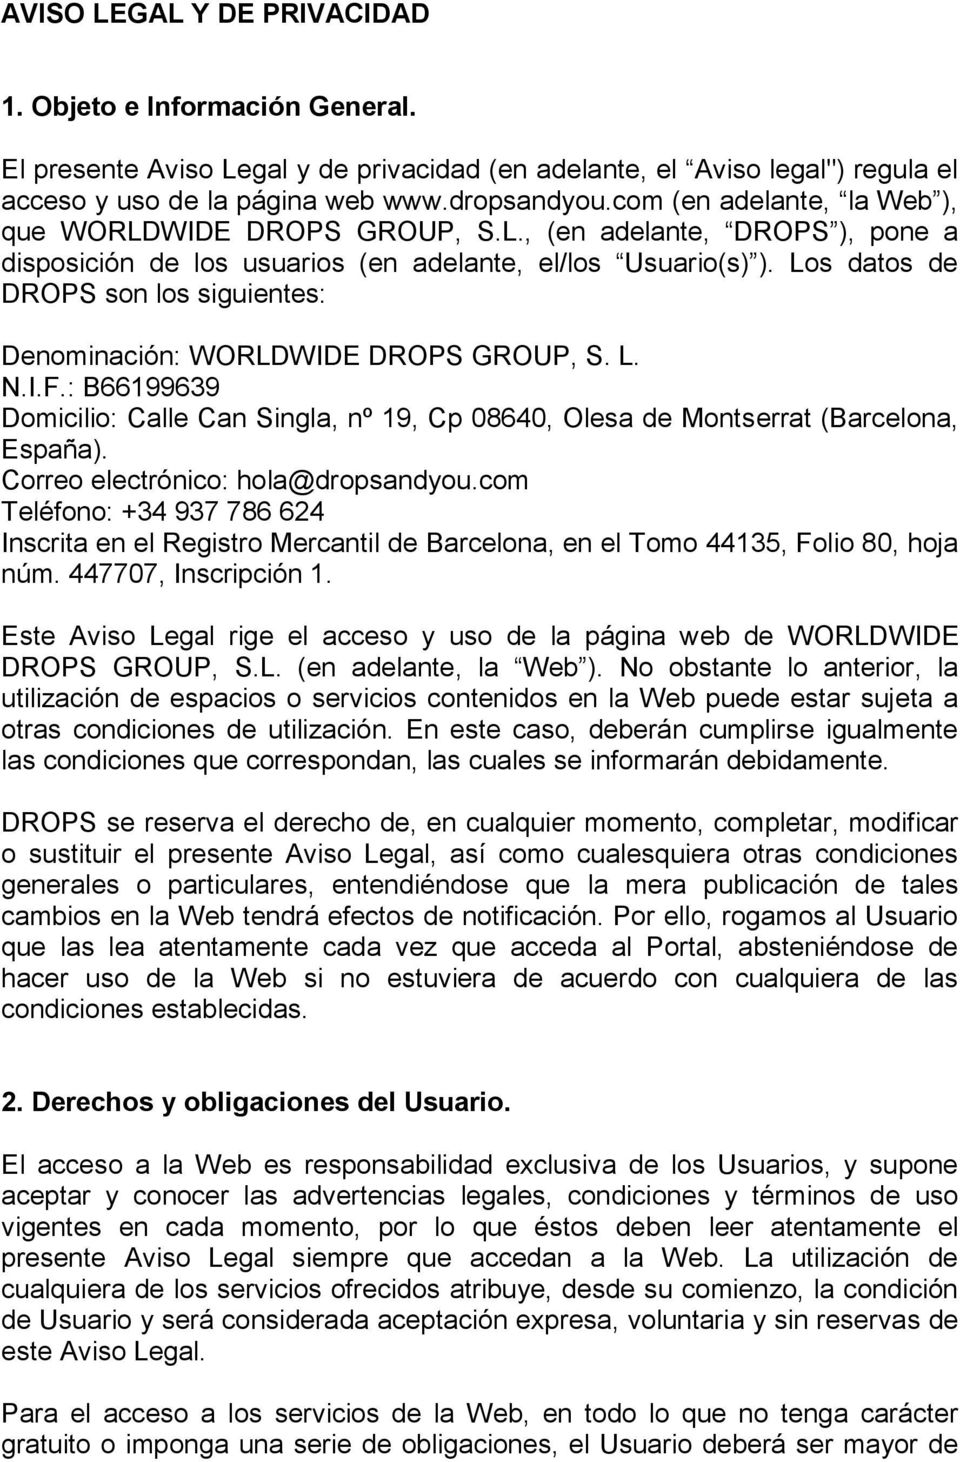 Los datos de DROPS son los siguientes: Denominación: WORLDWIDE DROPS GROUP, S. L. N.I.F.: B66199639 Domicilio: Calle Can Singla, nº 19, Cp 08640, Olesa de Montserrat (Barcelona, España).